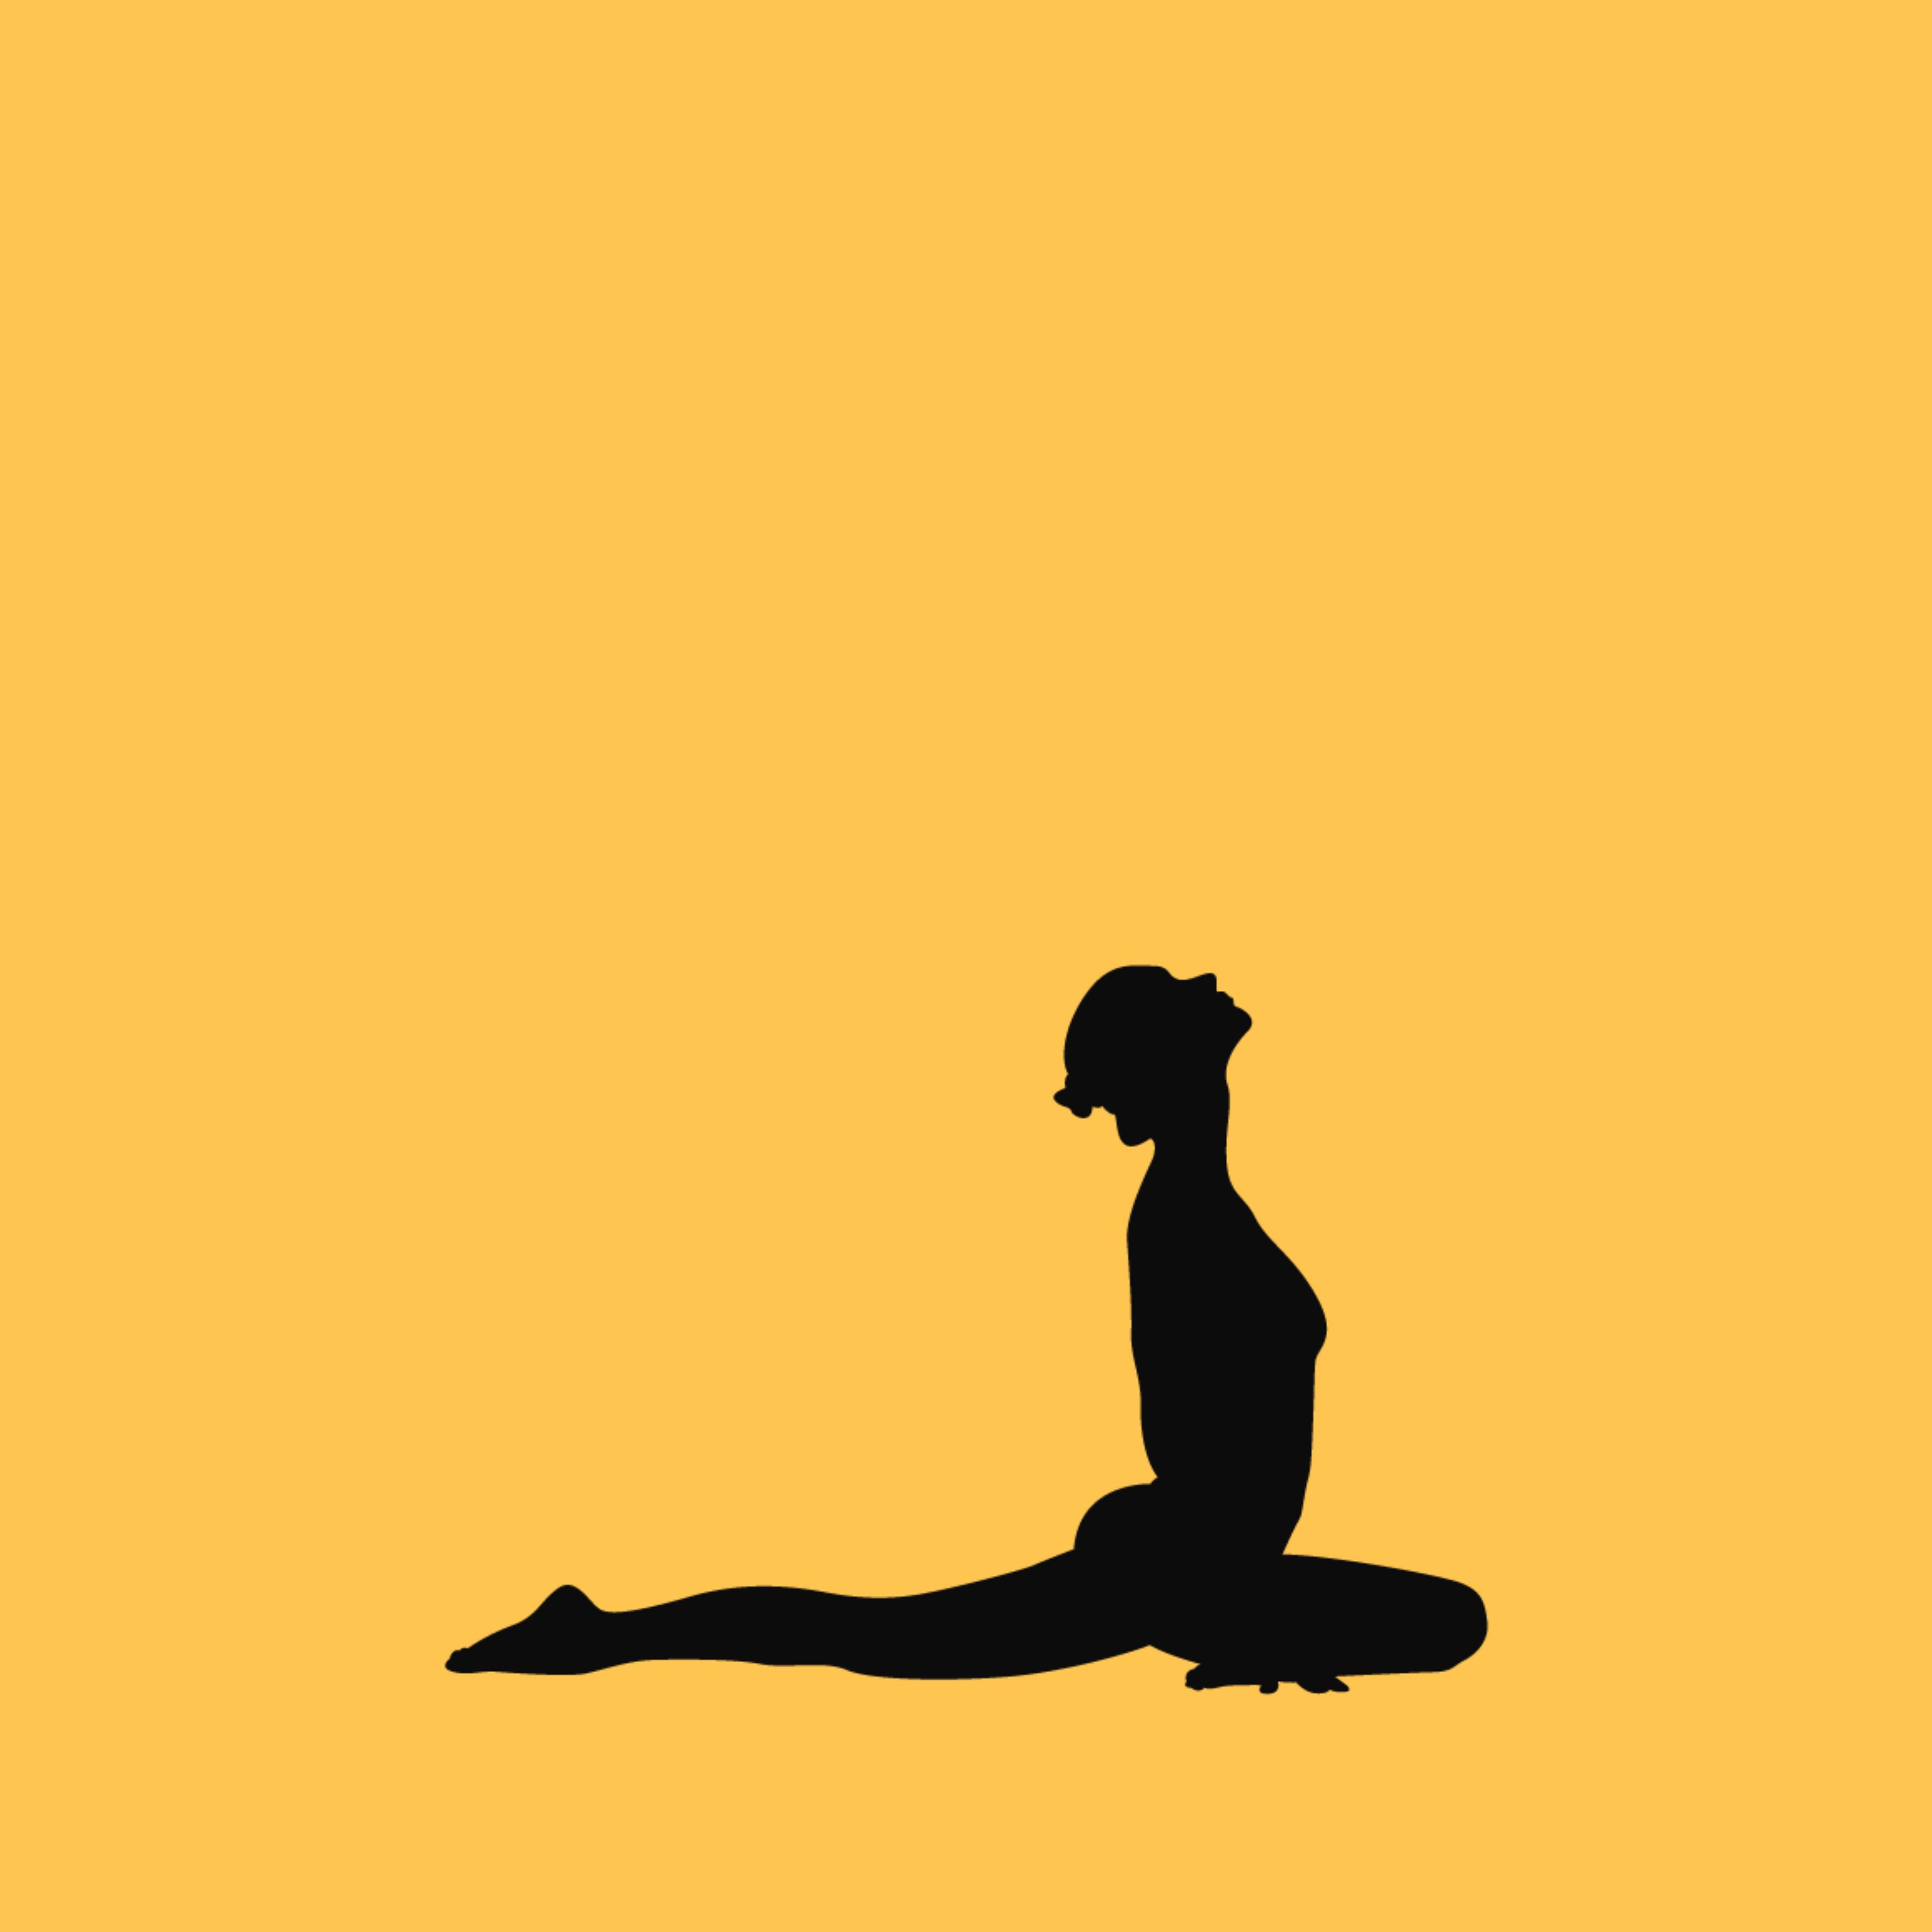 Sis postures de ioga per relaxar-se i combatre l'ansietat